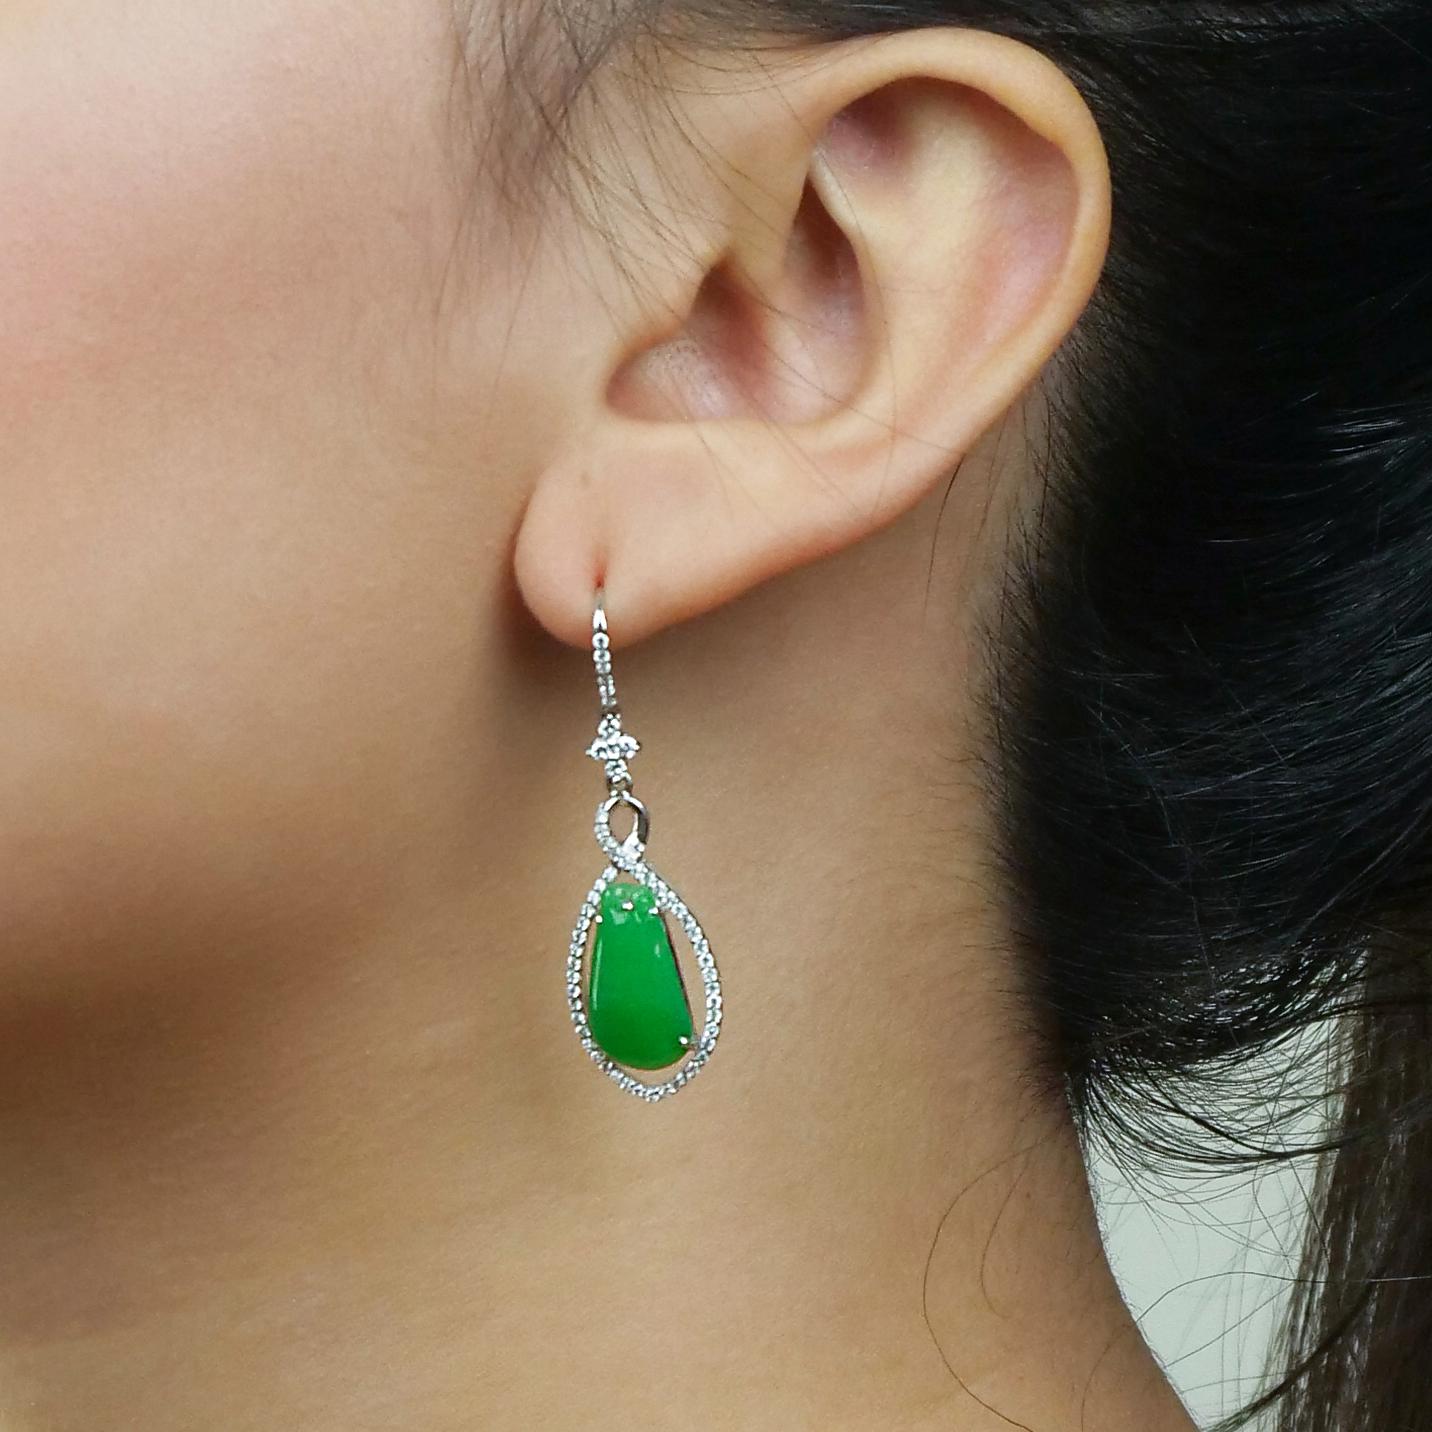 Superbes boucles d'oreilles en jade en forme de poire, suspendues par des croix, des cercles et des lignes verticales de différentes formes, le tout recouvert de diamants scintillants. Le jade est calme et rafraîchissant et présente un magnifique